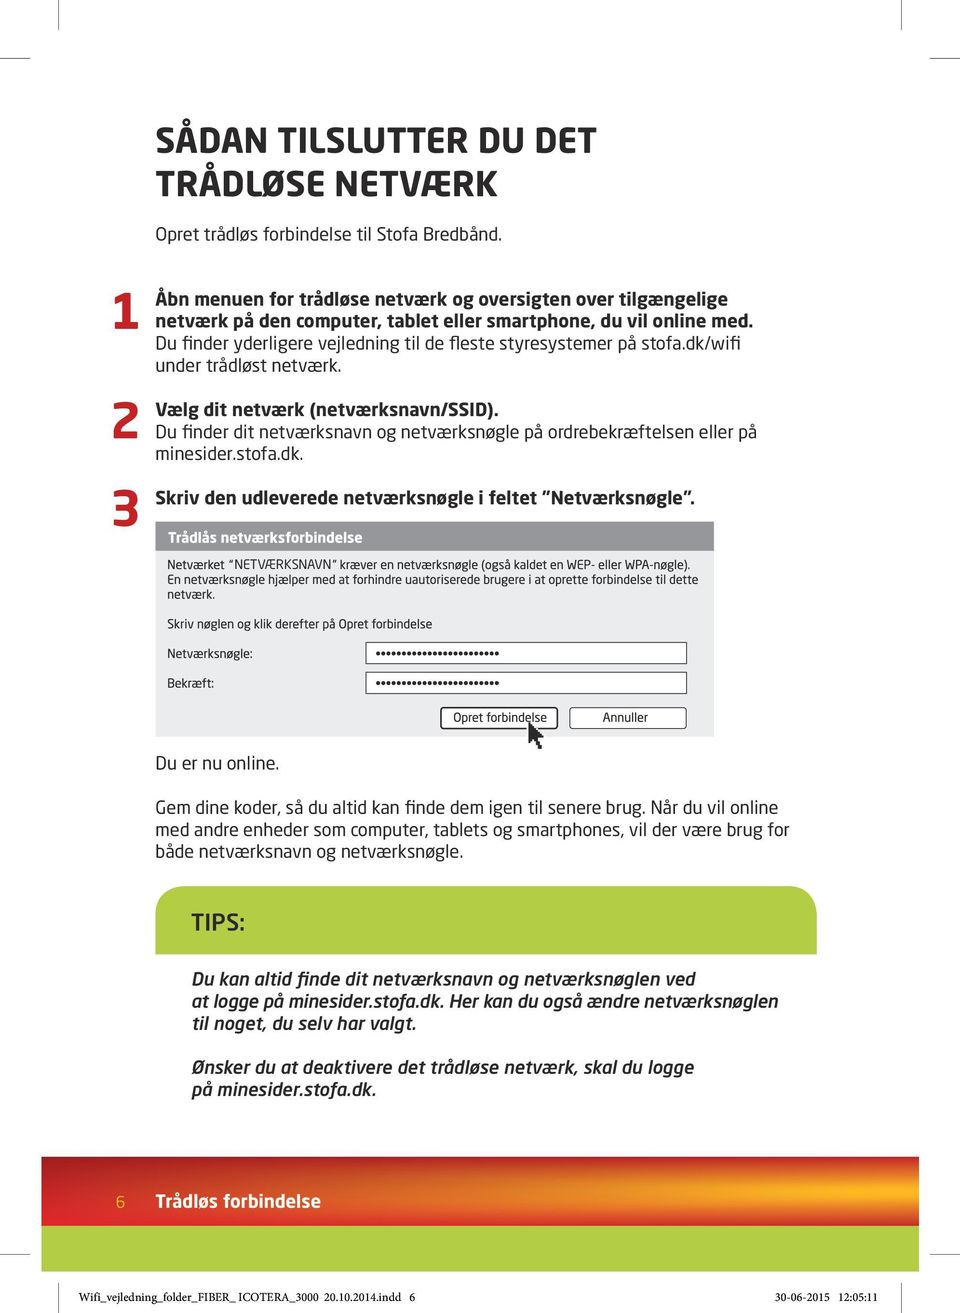 Du finder yderligere vejledning til de fleste styresystemer på stofa.dk/wifi under trådløst netværk. Vælg dit netværk (netværksnavn/ssid).